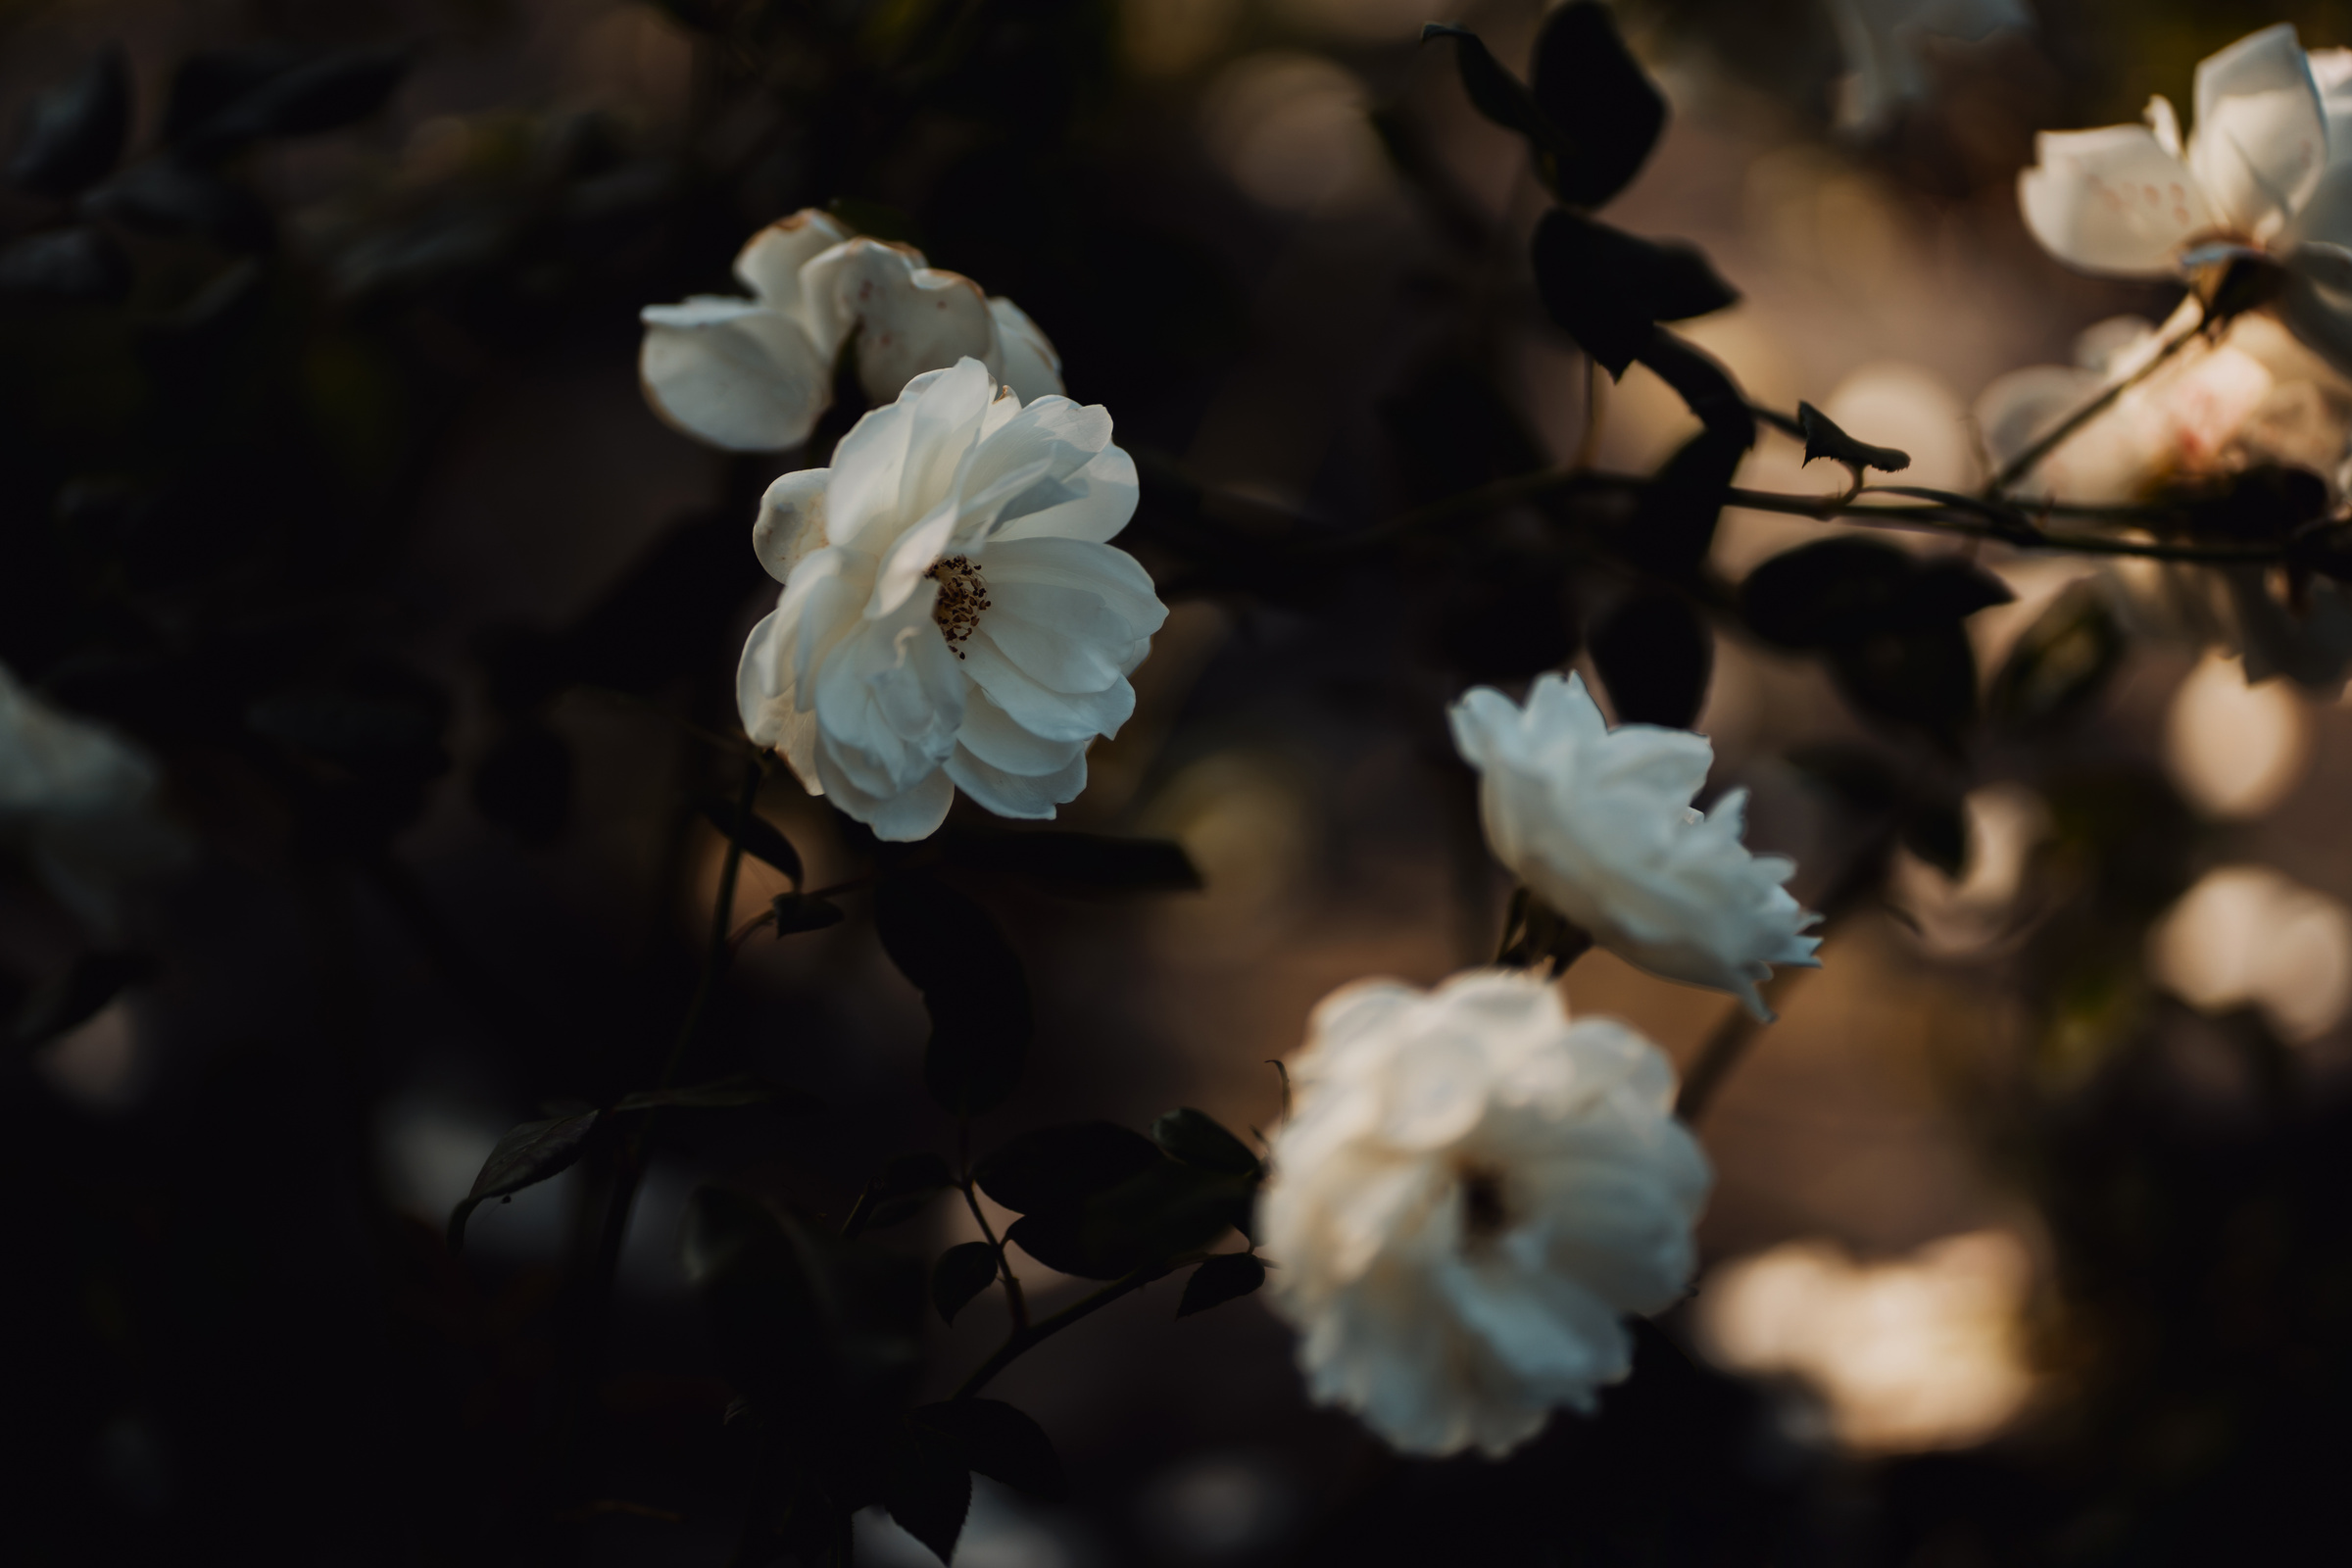 Darky moody garden roses, flower aesthetic